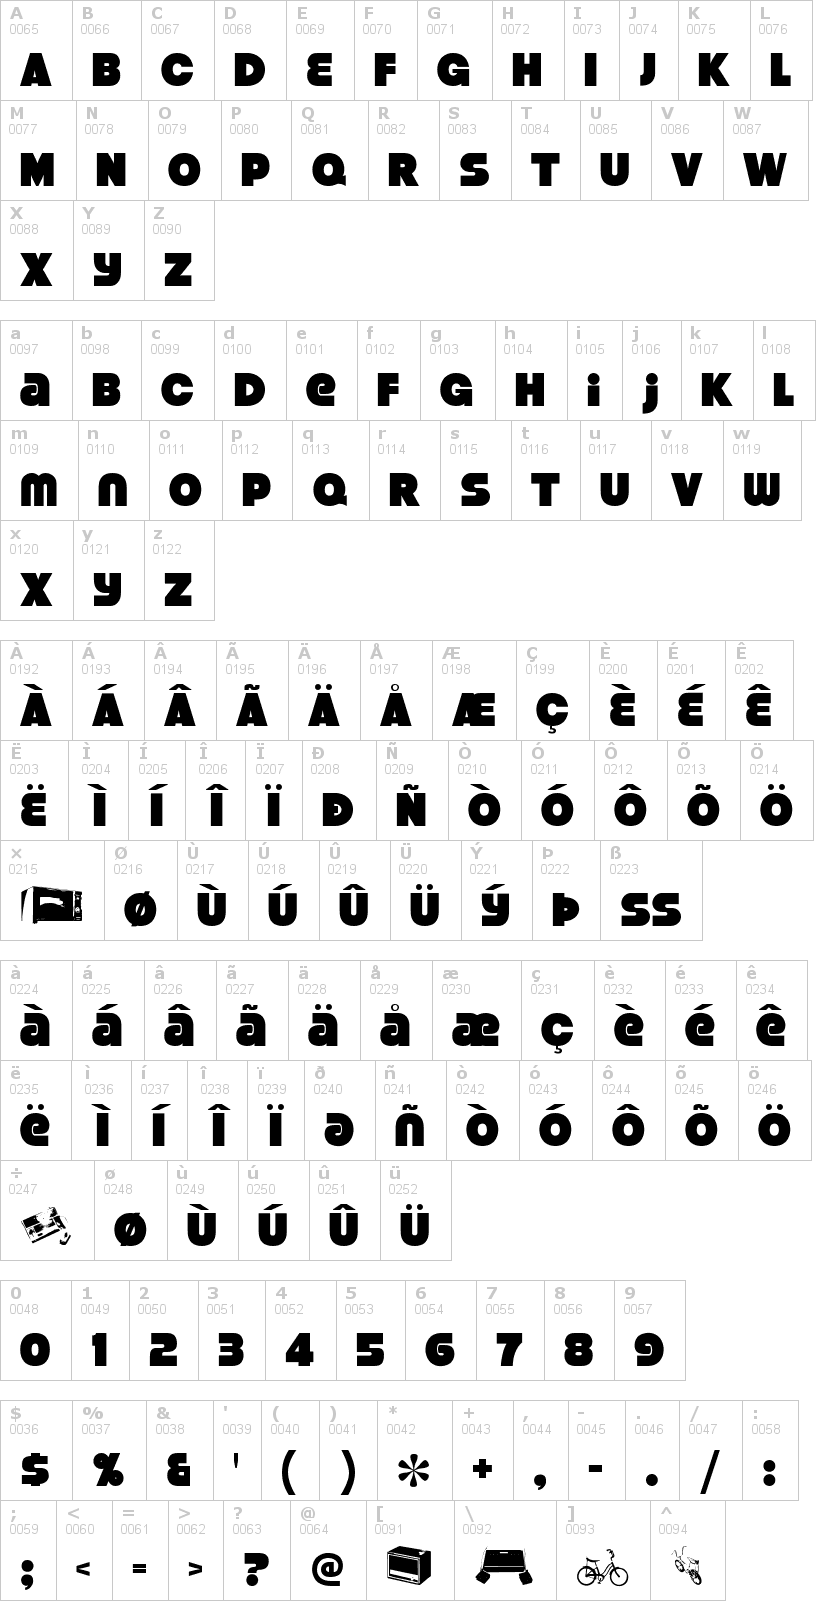 Lettere dell'alfabeto del font strenuous con le quali è possibile realizzare adesivi prespaziati